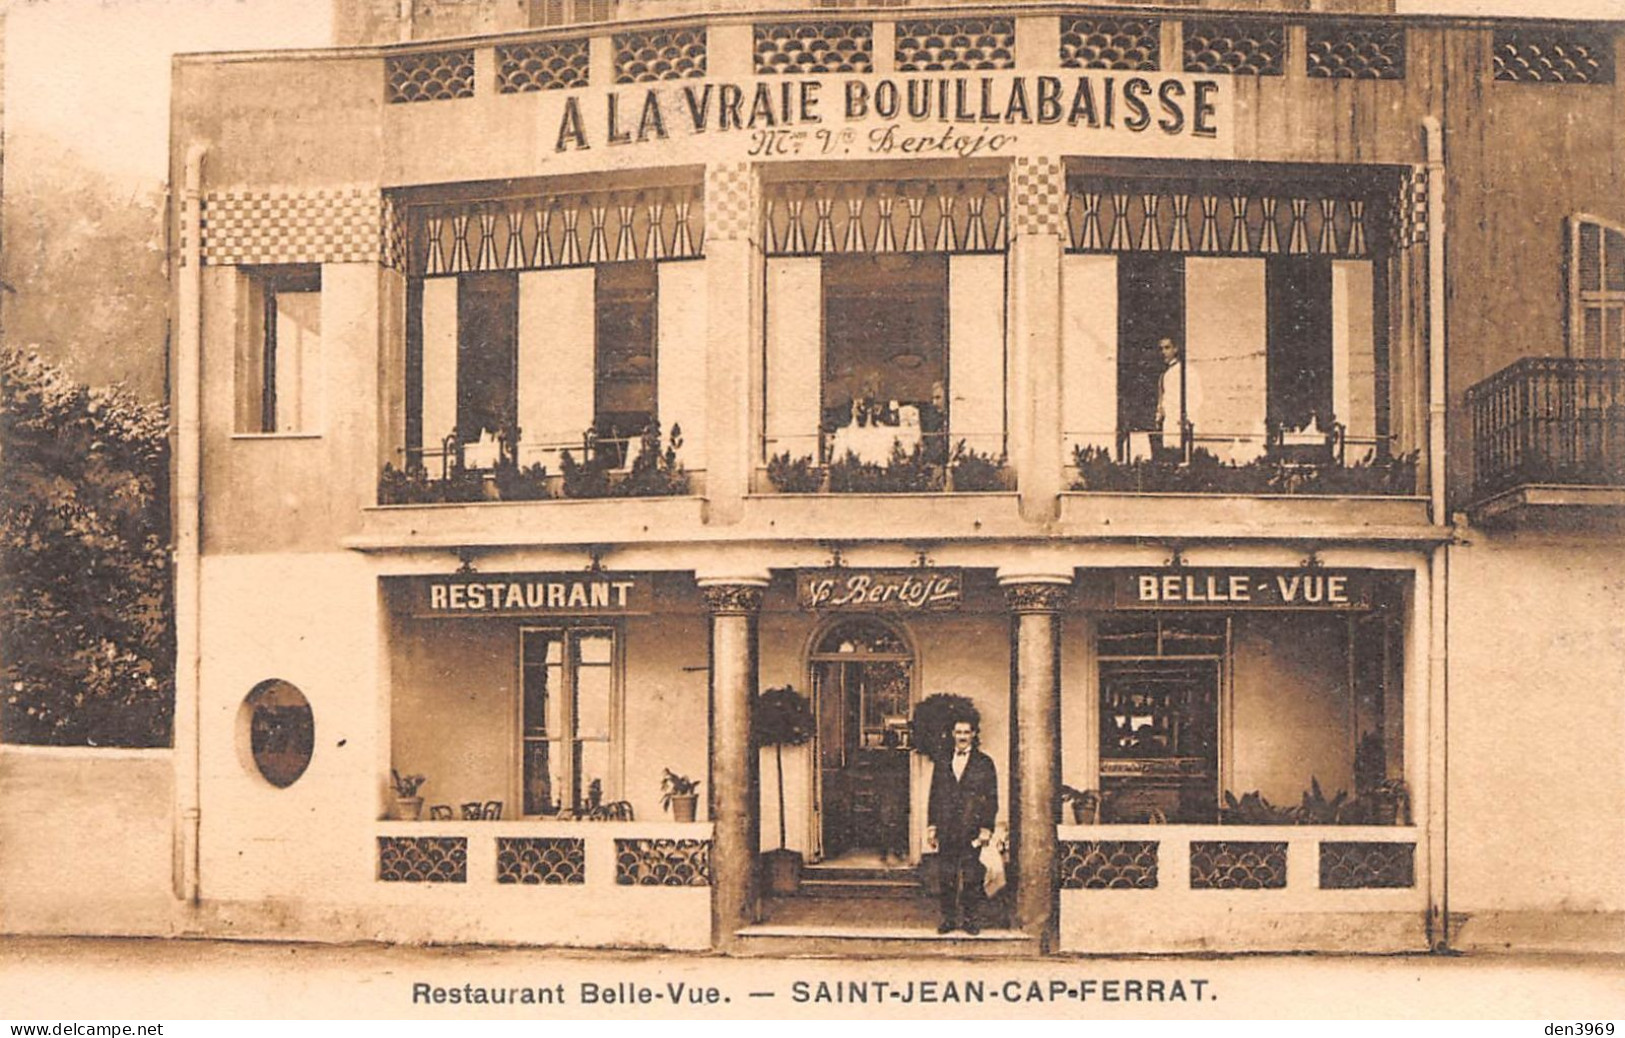 SAINT-JEAN-CAP-FERRAT (Alpes-Maritimes) - Restaurant Belle-Vue A La Vraie Bouillabaisse Vve L. Bertojo - Ecrit (2 Scans) - Saint-Jean-Cap-Ferrat